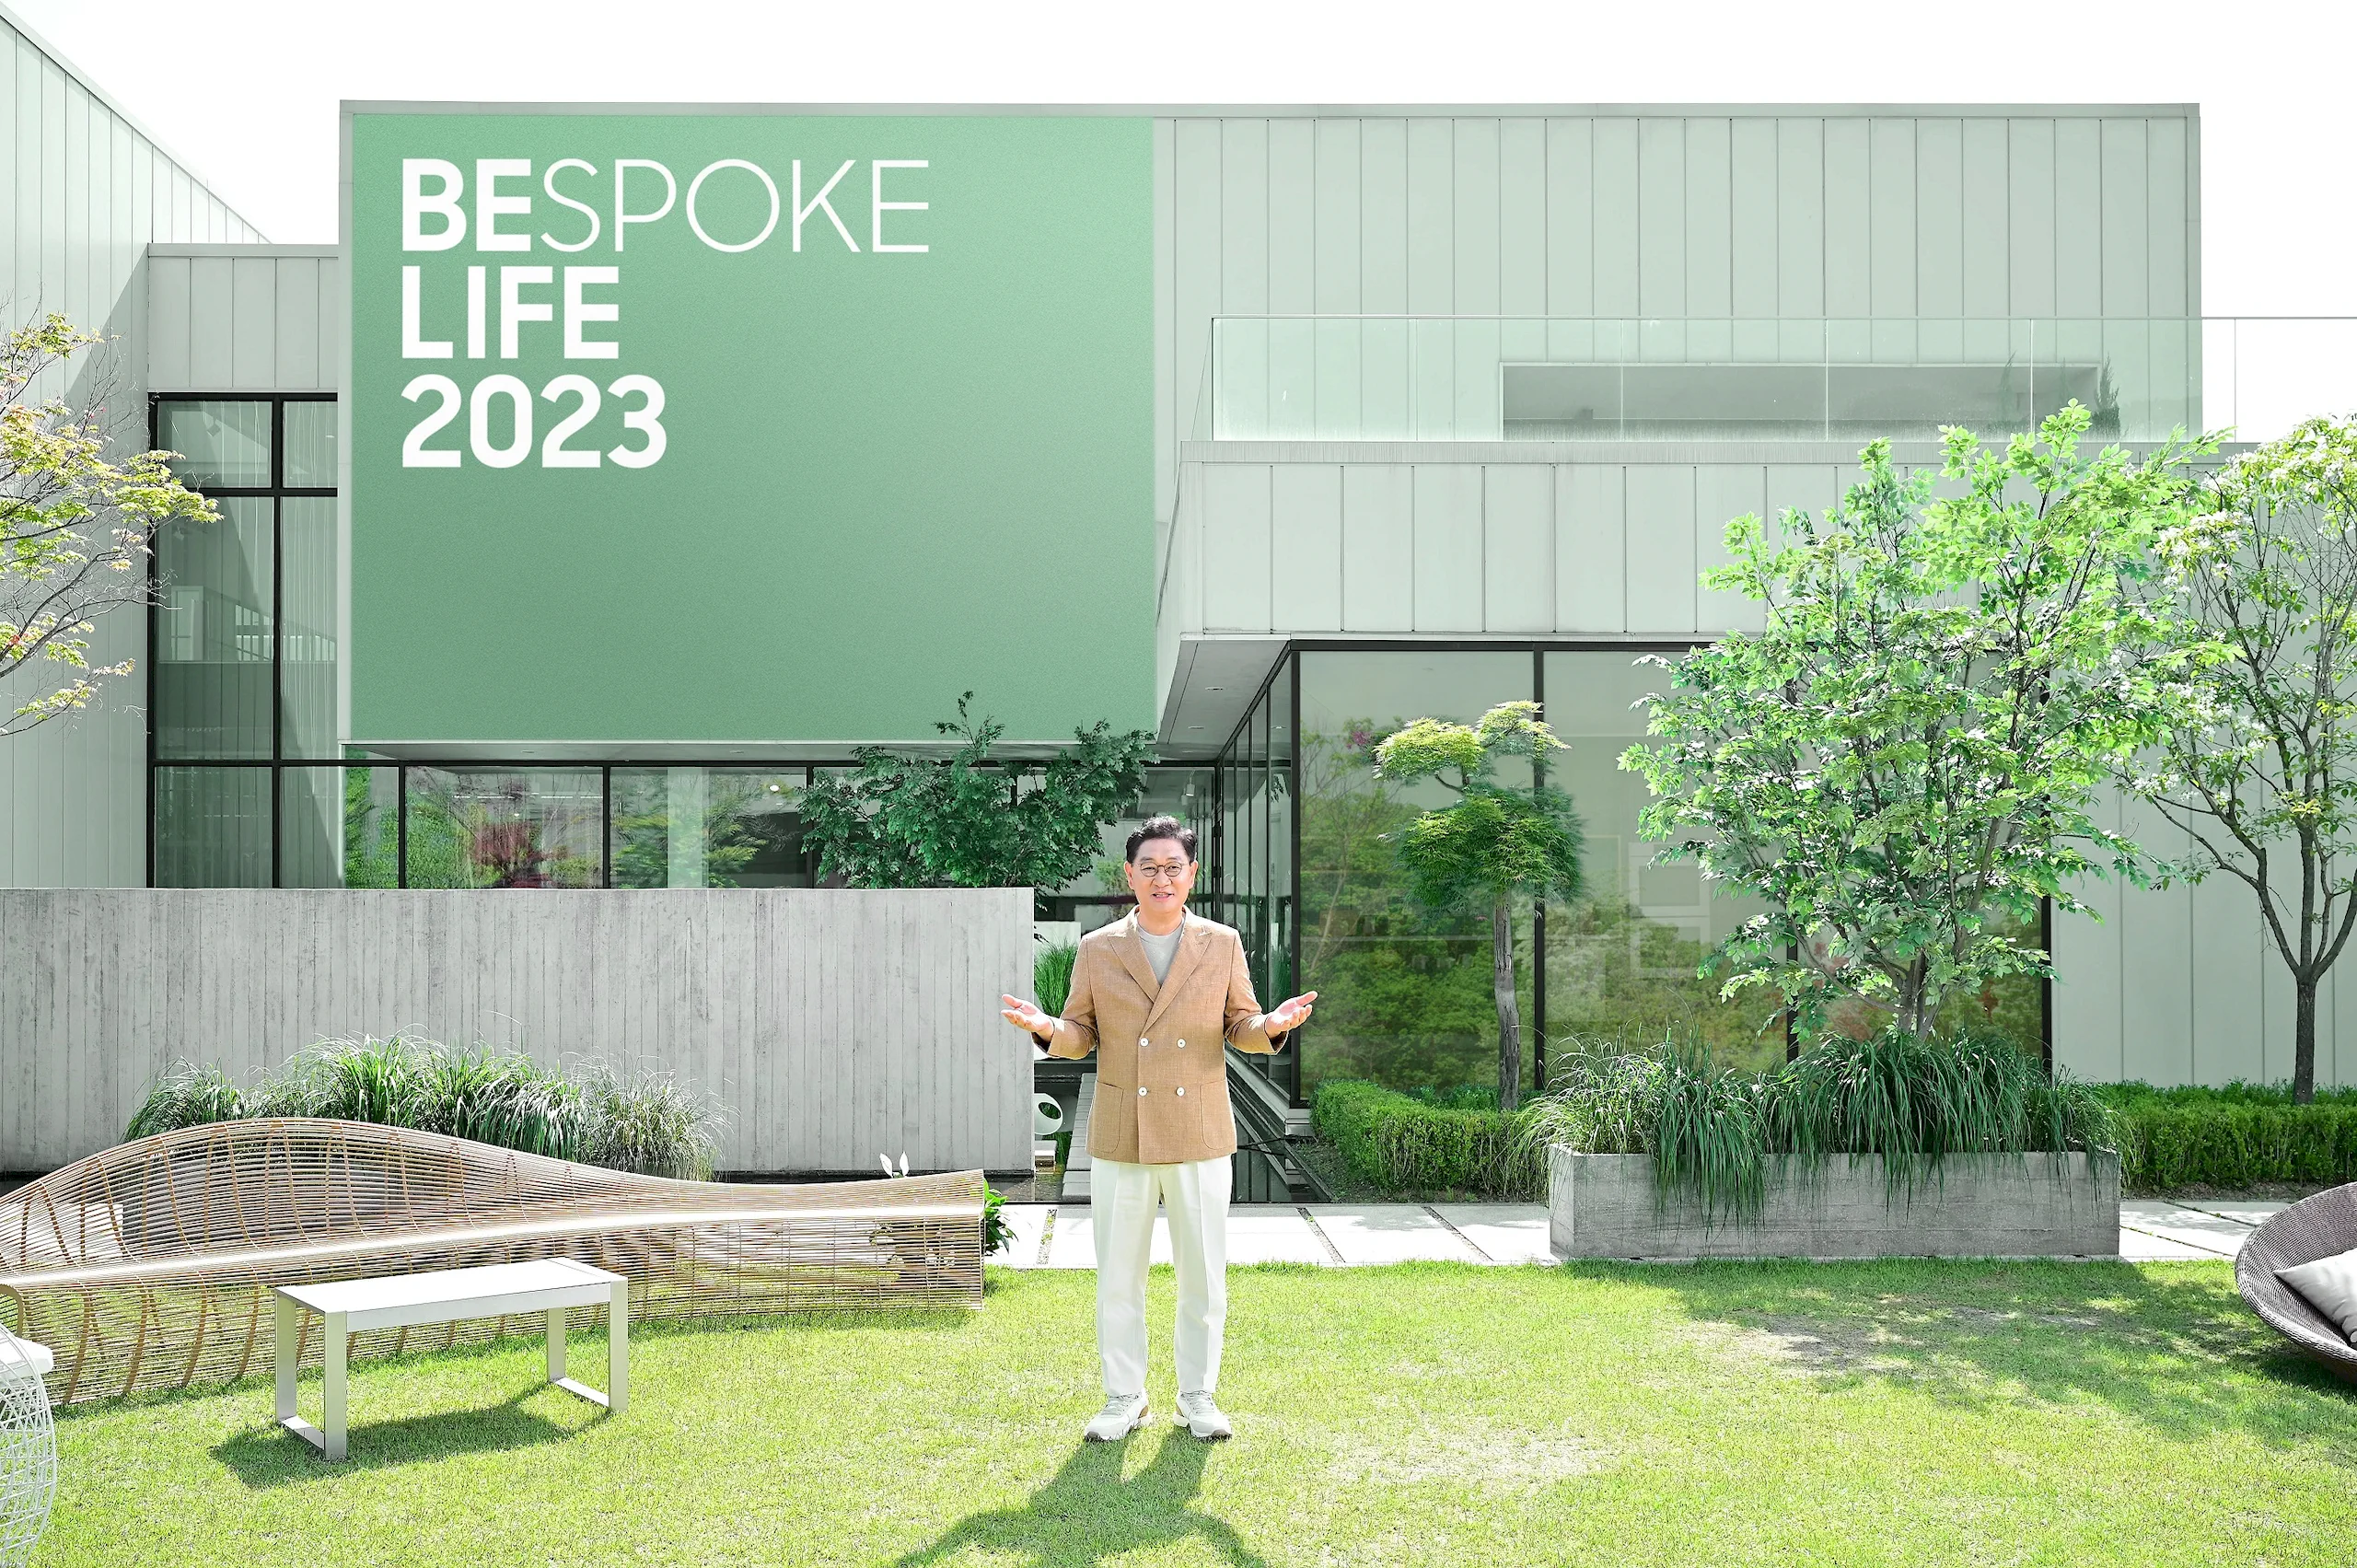 Sự kiện Bespoke Life 2023 của Samsung: Giới thiệu công nghệ mang đến sự tiện lợi cho hôm nay và bền vững cho tương lai